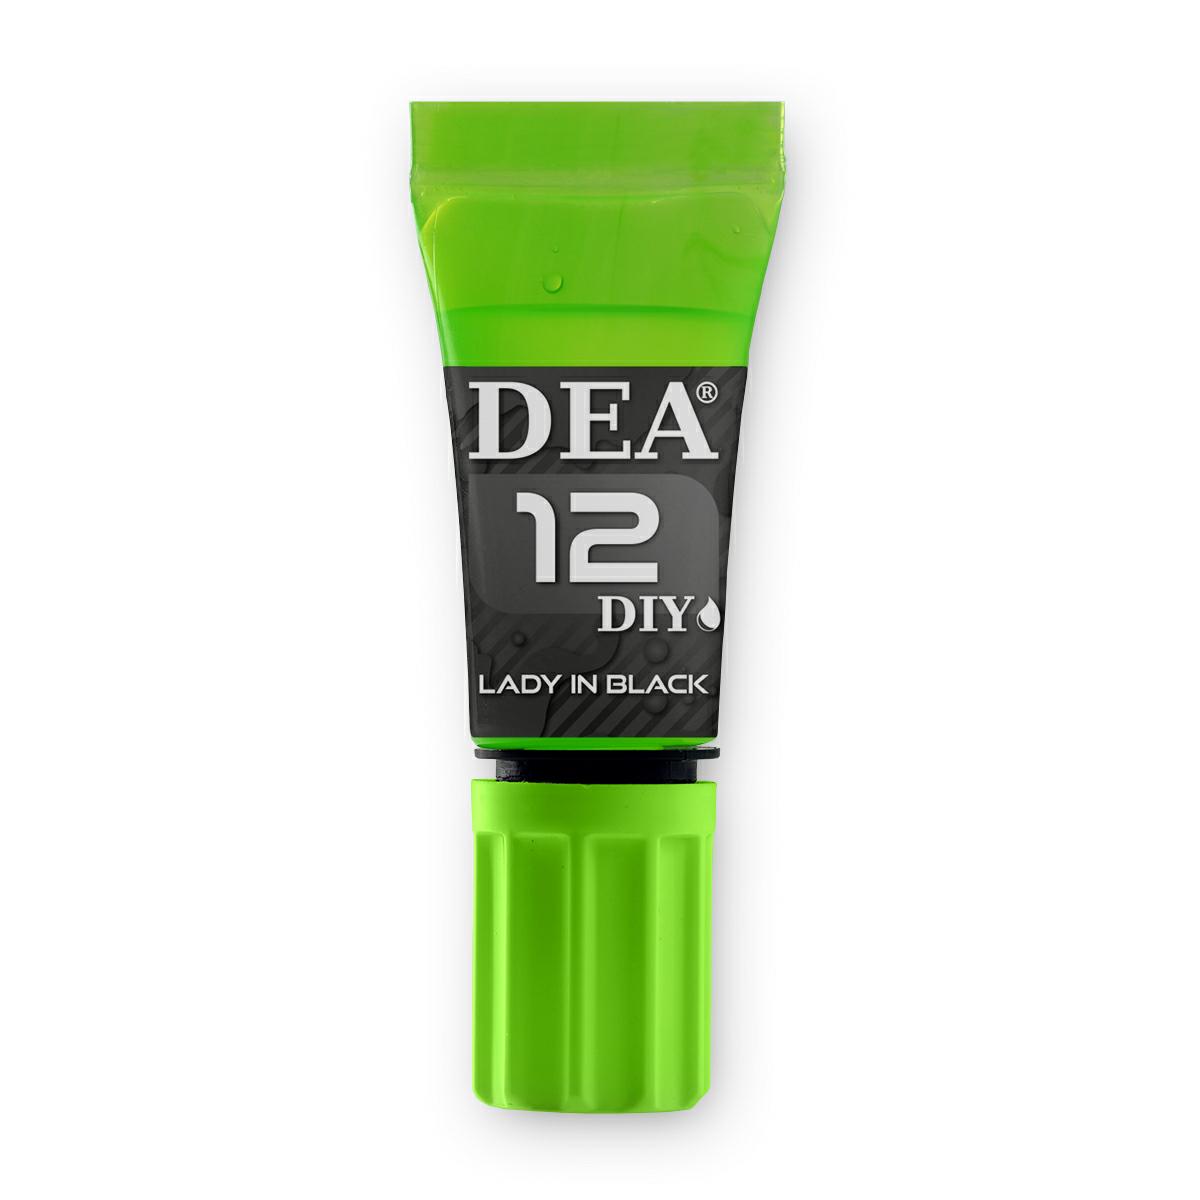 DeaDea Flavor Lady in Black 12 Aroma 10 ml liquido sigaretta elettronica